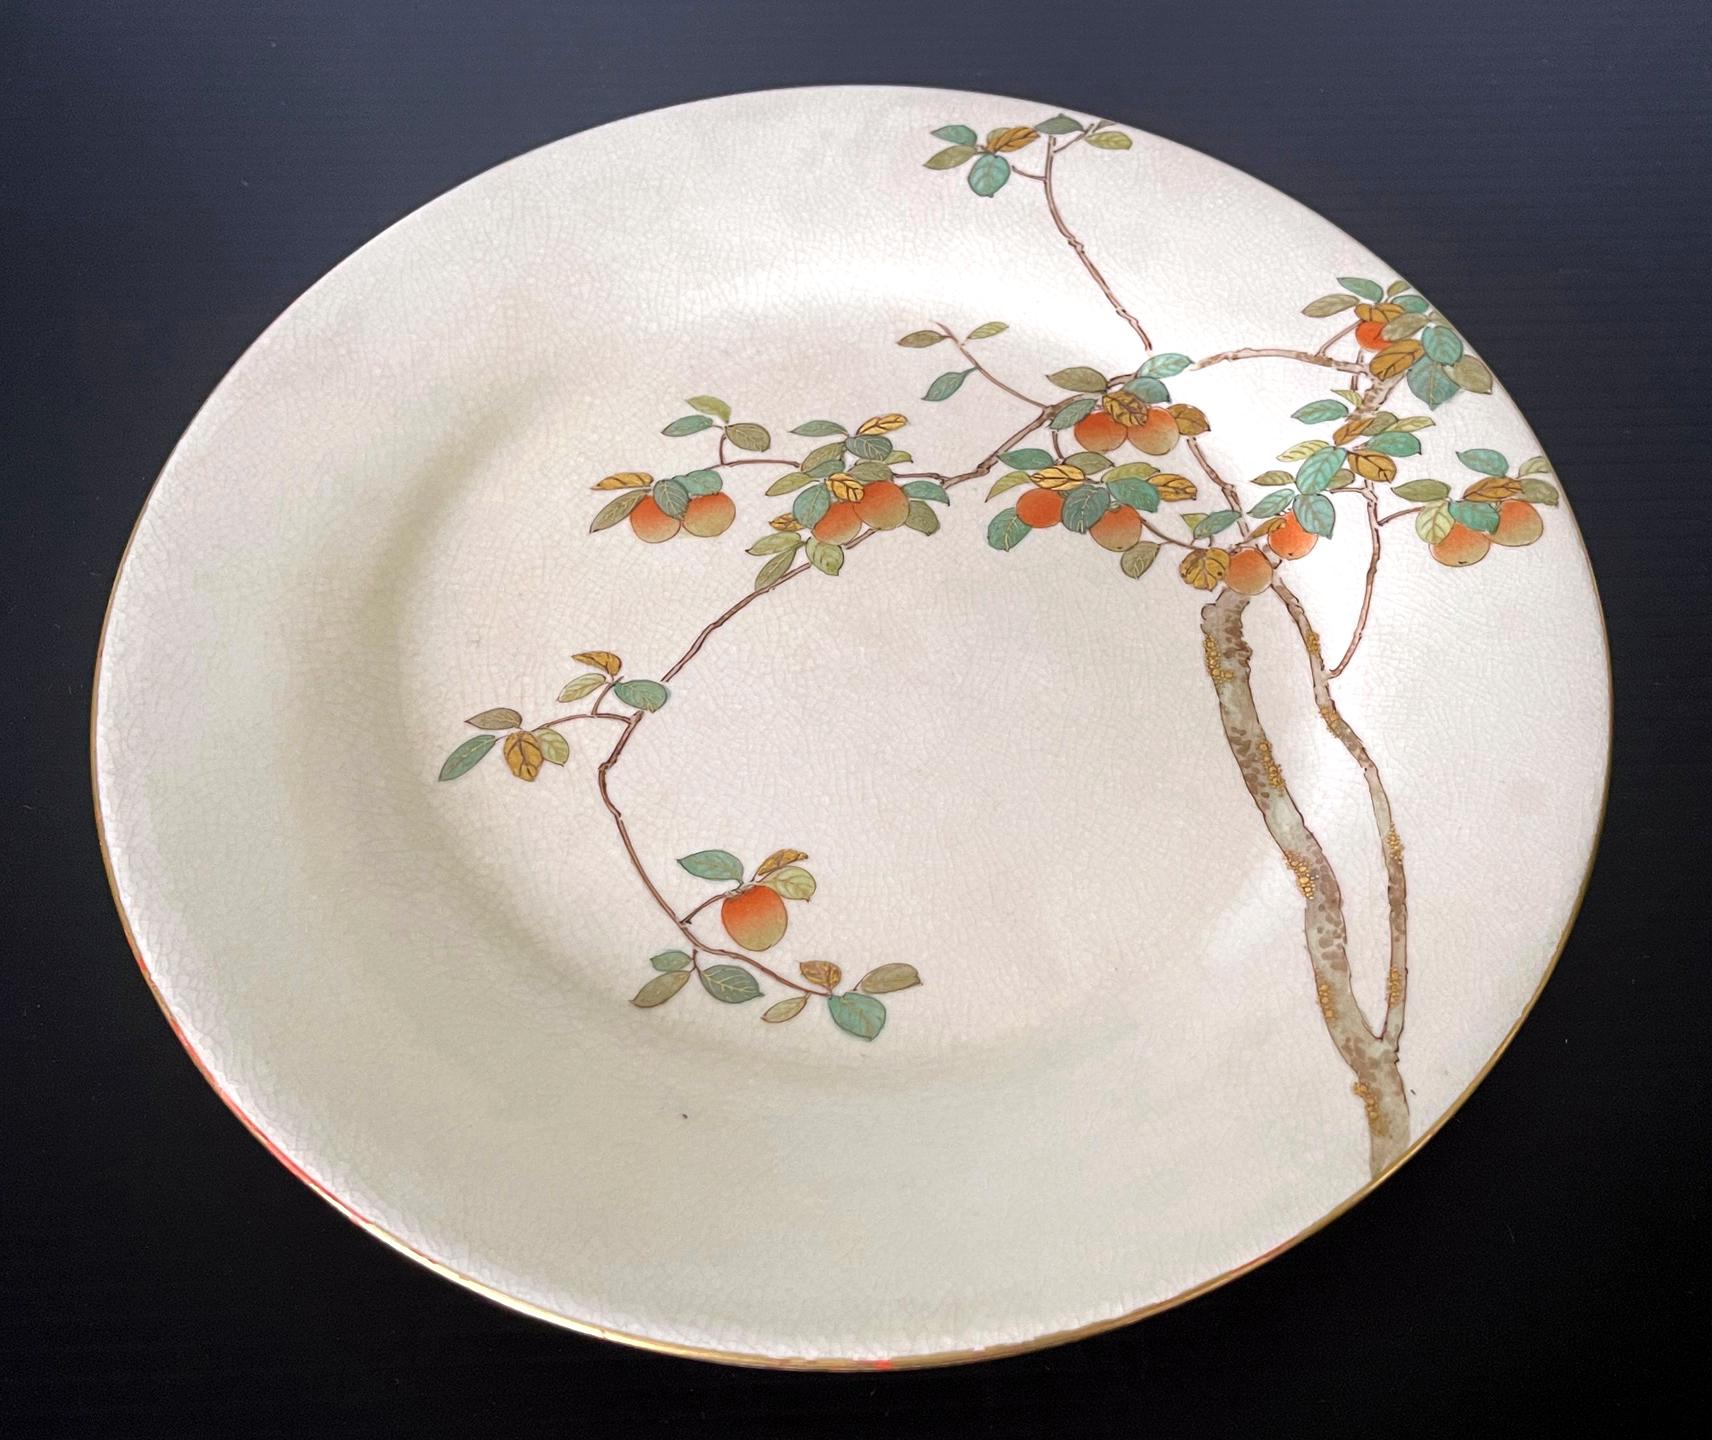 Assiette en céramique japonaise satsuma fabriquée par Kinkozan et vendue par Yamanaka & Co. vers les années 1900-20 (fin de la période Meiji à début de la période Tasho). L'assiette émaillée de couleur crème présente une très belle décoration d'un